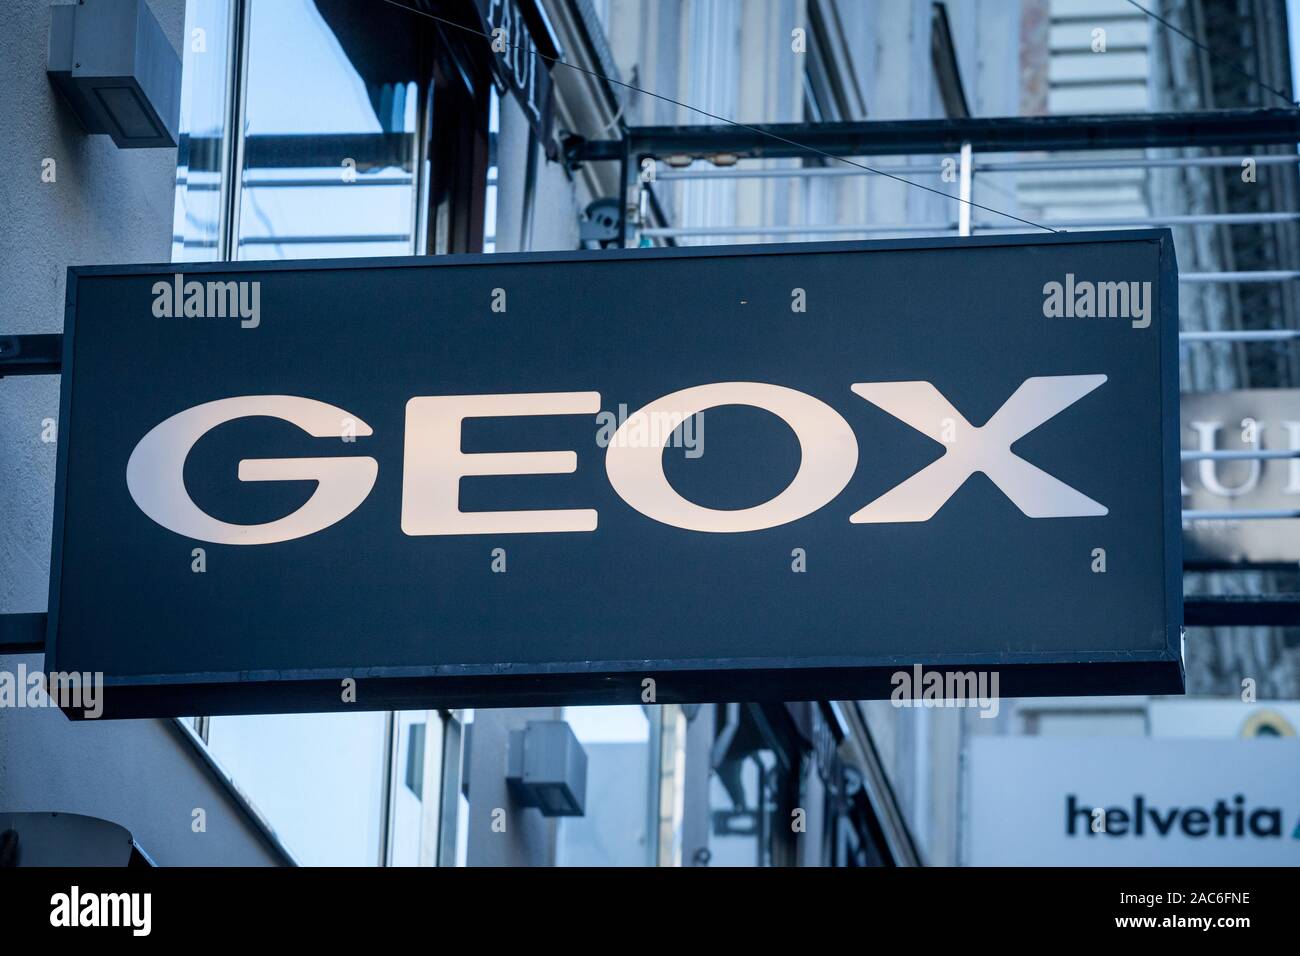 Geox immagini e fotografie stock ad alta risoluzione - Alamy